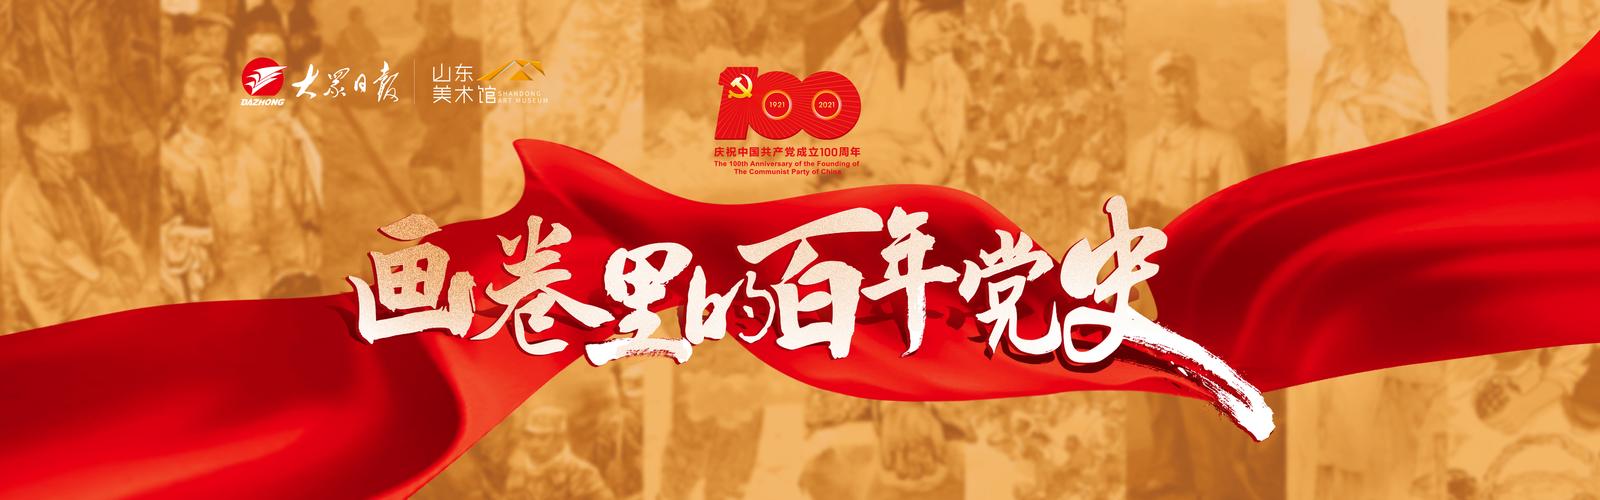 画卷里的百年党史|(三)胶济铁路大罢工 - 海报新闻